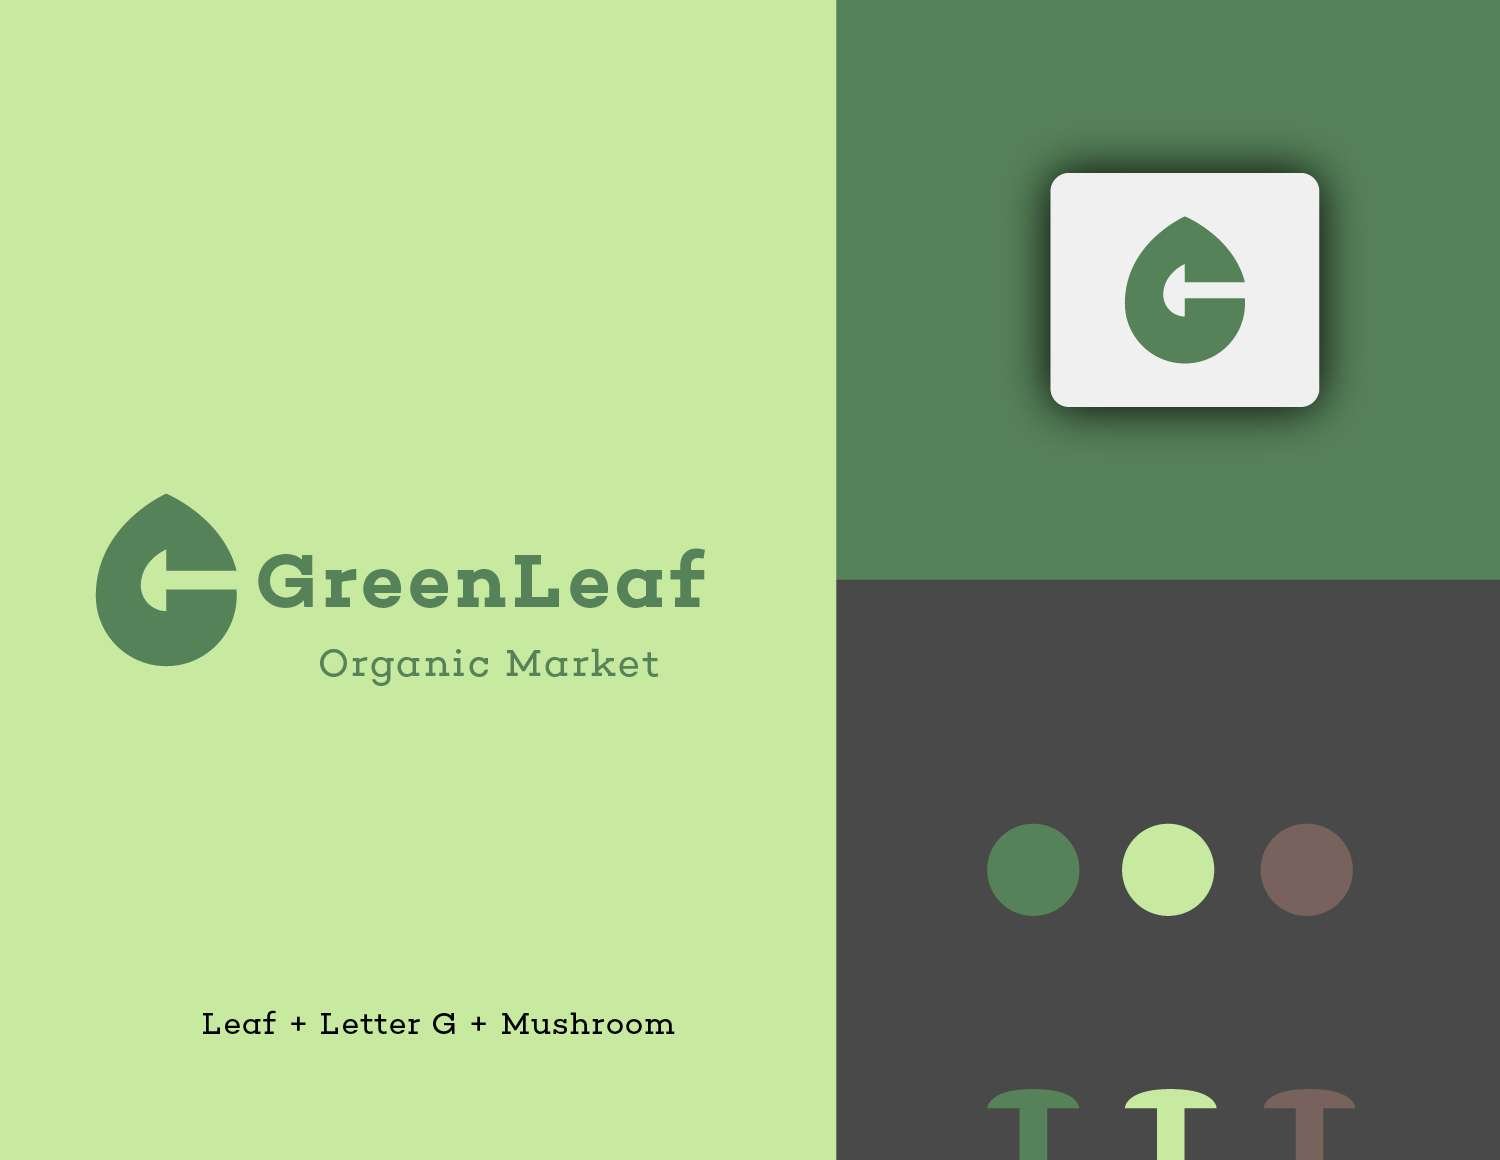 Logo presentatie van GreenLeaf met 3 delen. Links het GreenLeaf logo met wordmark en 'Organic Market'. Rechtsboven een minimalistischer logo. Rechtsonder het kleurenpalet en 3 paddenstoelen in huisstijlkleuren, weerspiegelt de visuele identiteit van GreenLeaf.